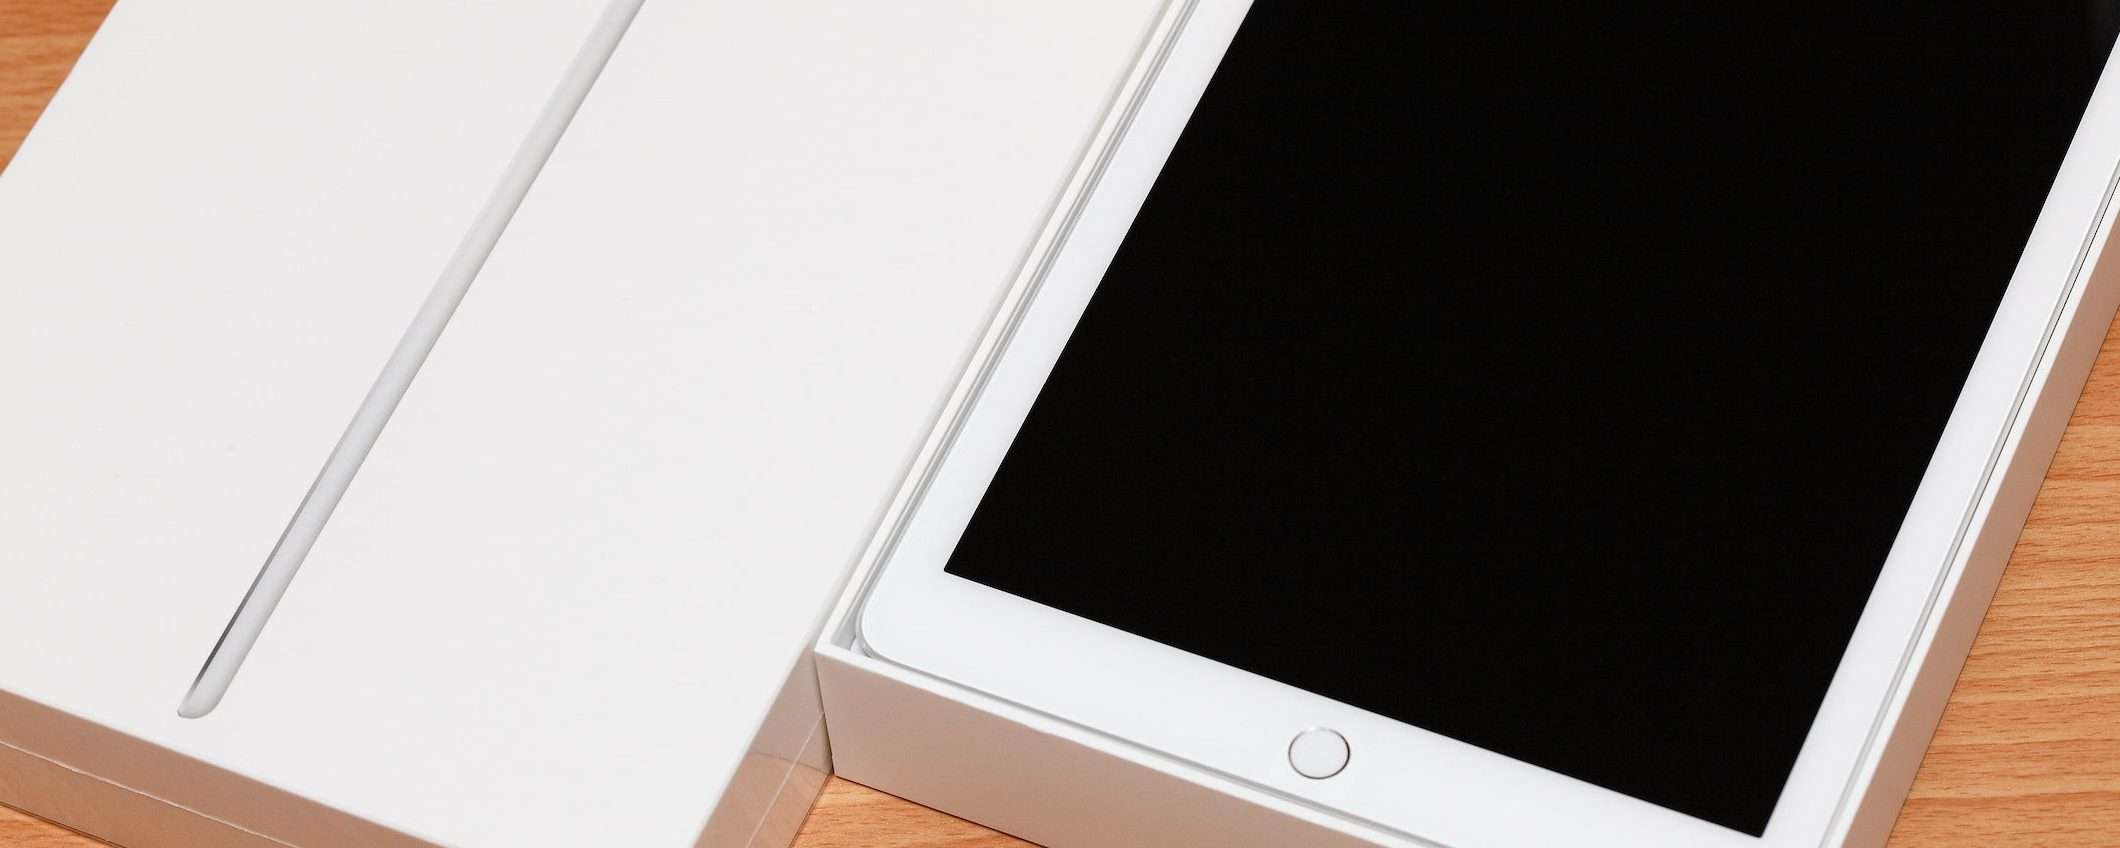 Apple: iPad Air 2 e mini 2 sono diventati vintage